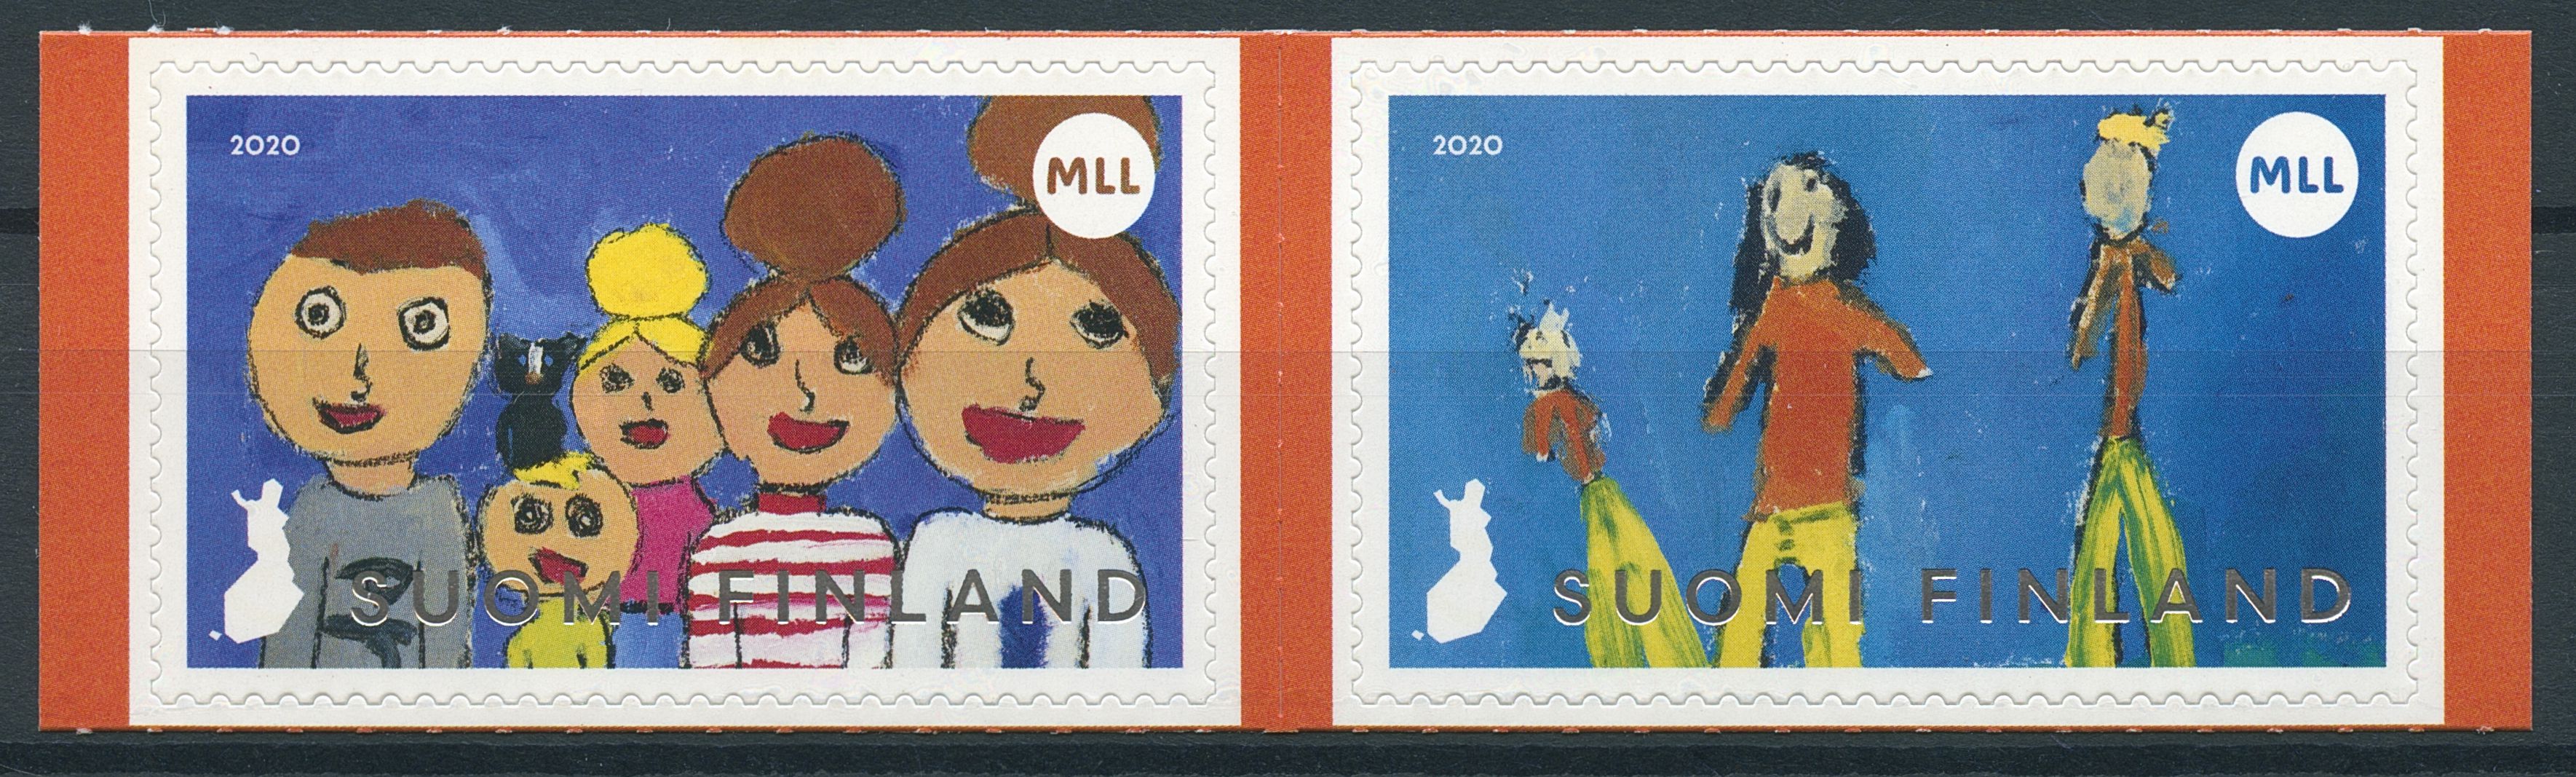 Finland Stamps 2020 MNH Mannerheim League for Child Welfare MLL 2v S/A Set